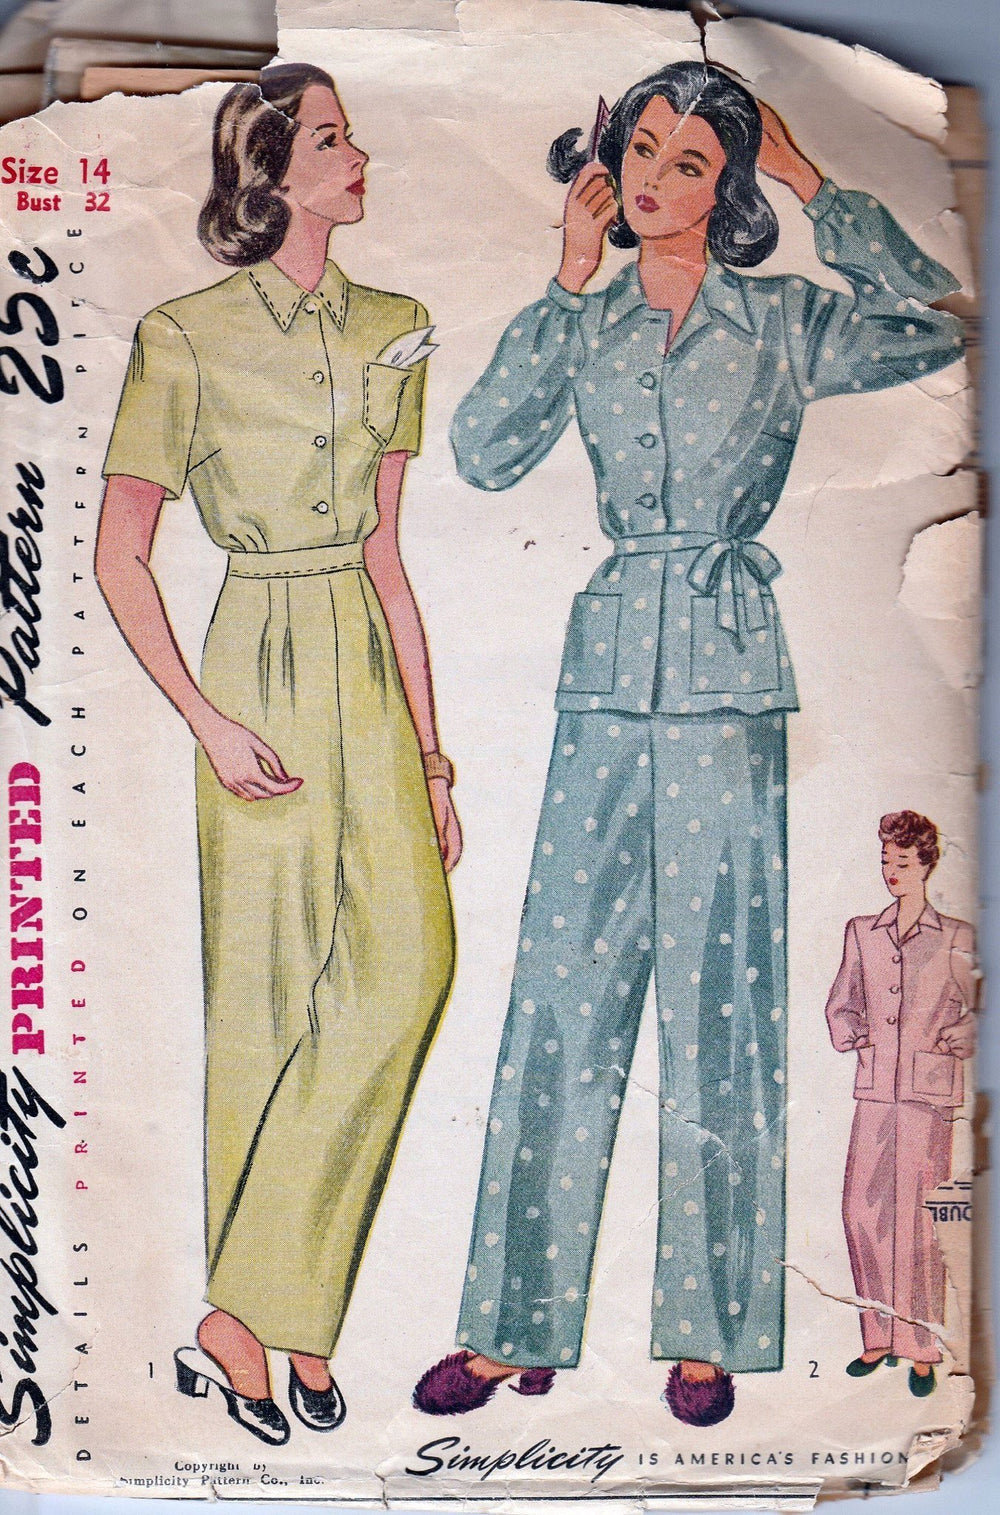 Simplicity 1995 Vintage 40's Sewing Pattern Ladies Pajamas Lingerie - VintageStitching - Vintage Sewing Patterns